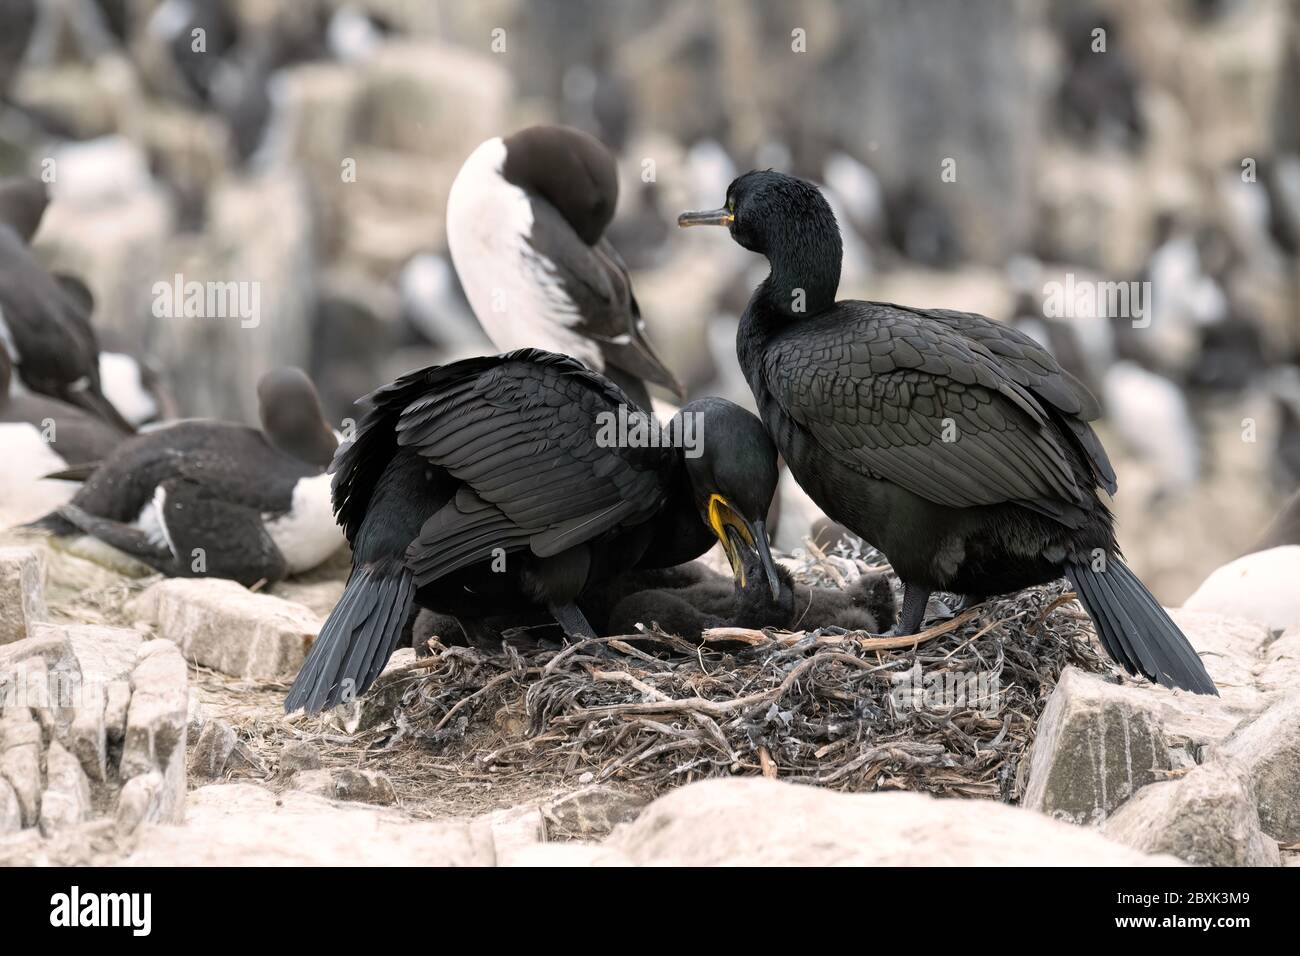 Ein Paar Europäische Happen oder Gemeine Hacke, die auf einem Nest sitzen und sich um ihre sehr jungen Küken kümmern. Aufnahme auf den Farne Islands, Großbritannien. Stockfoto